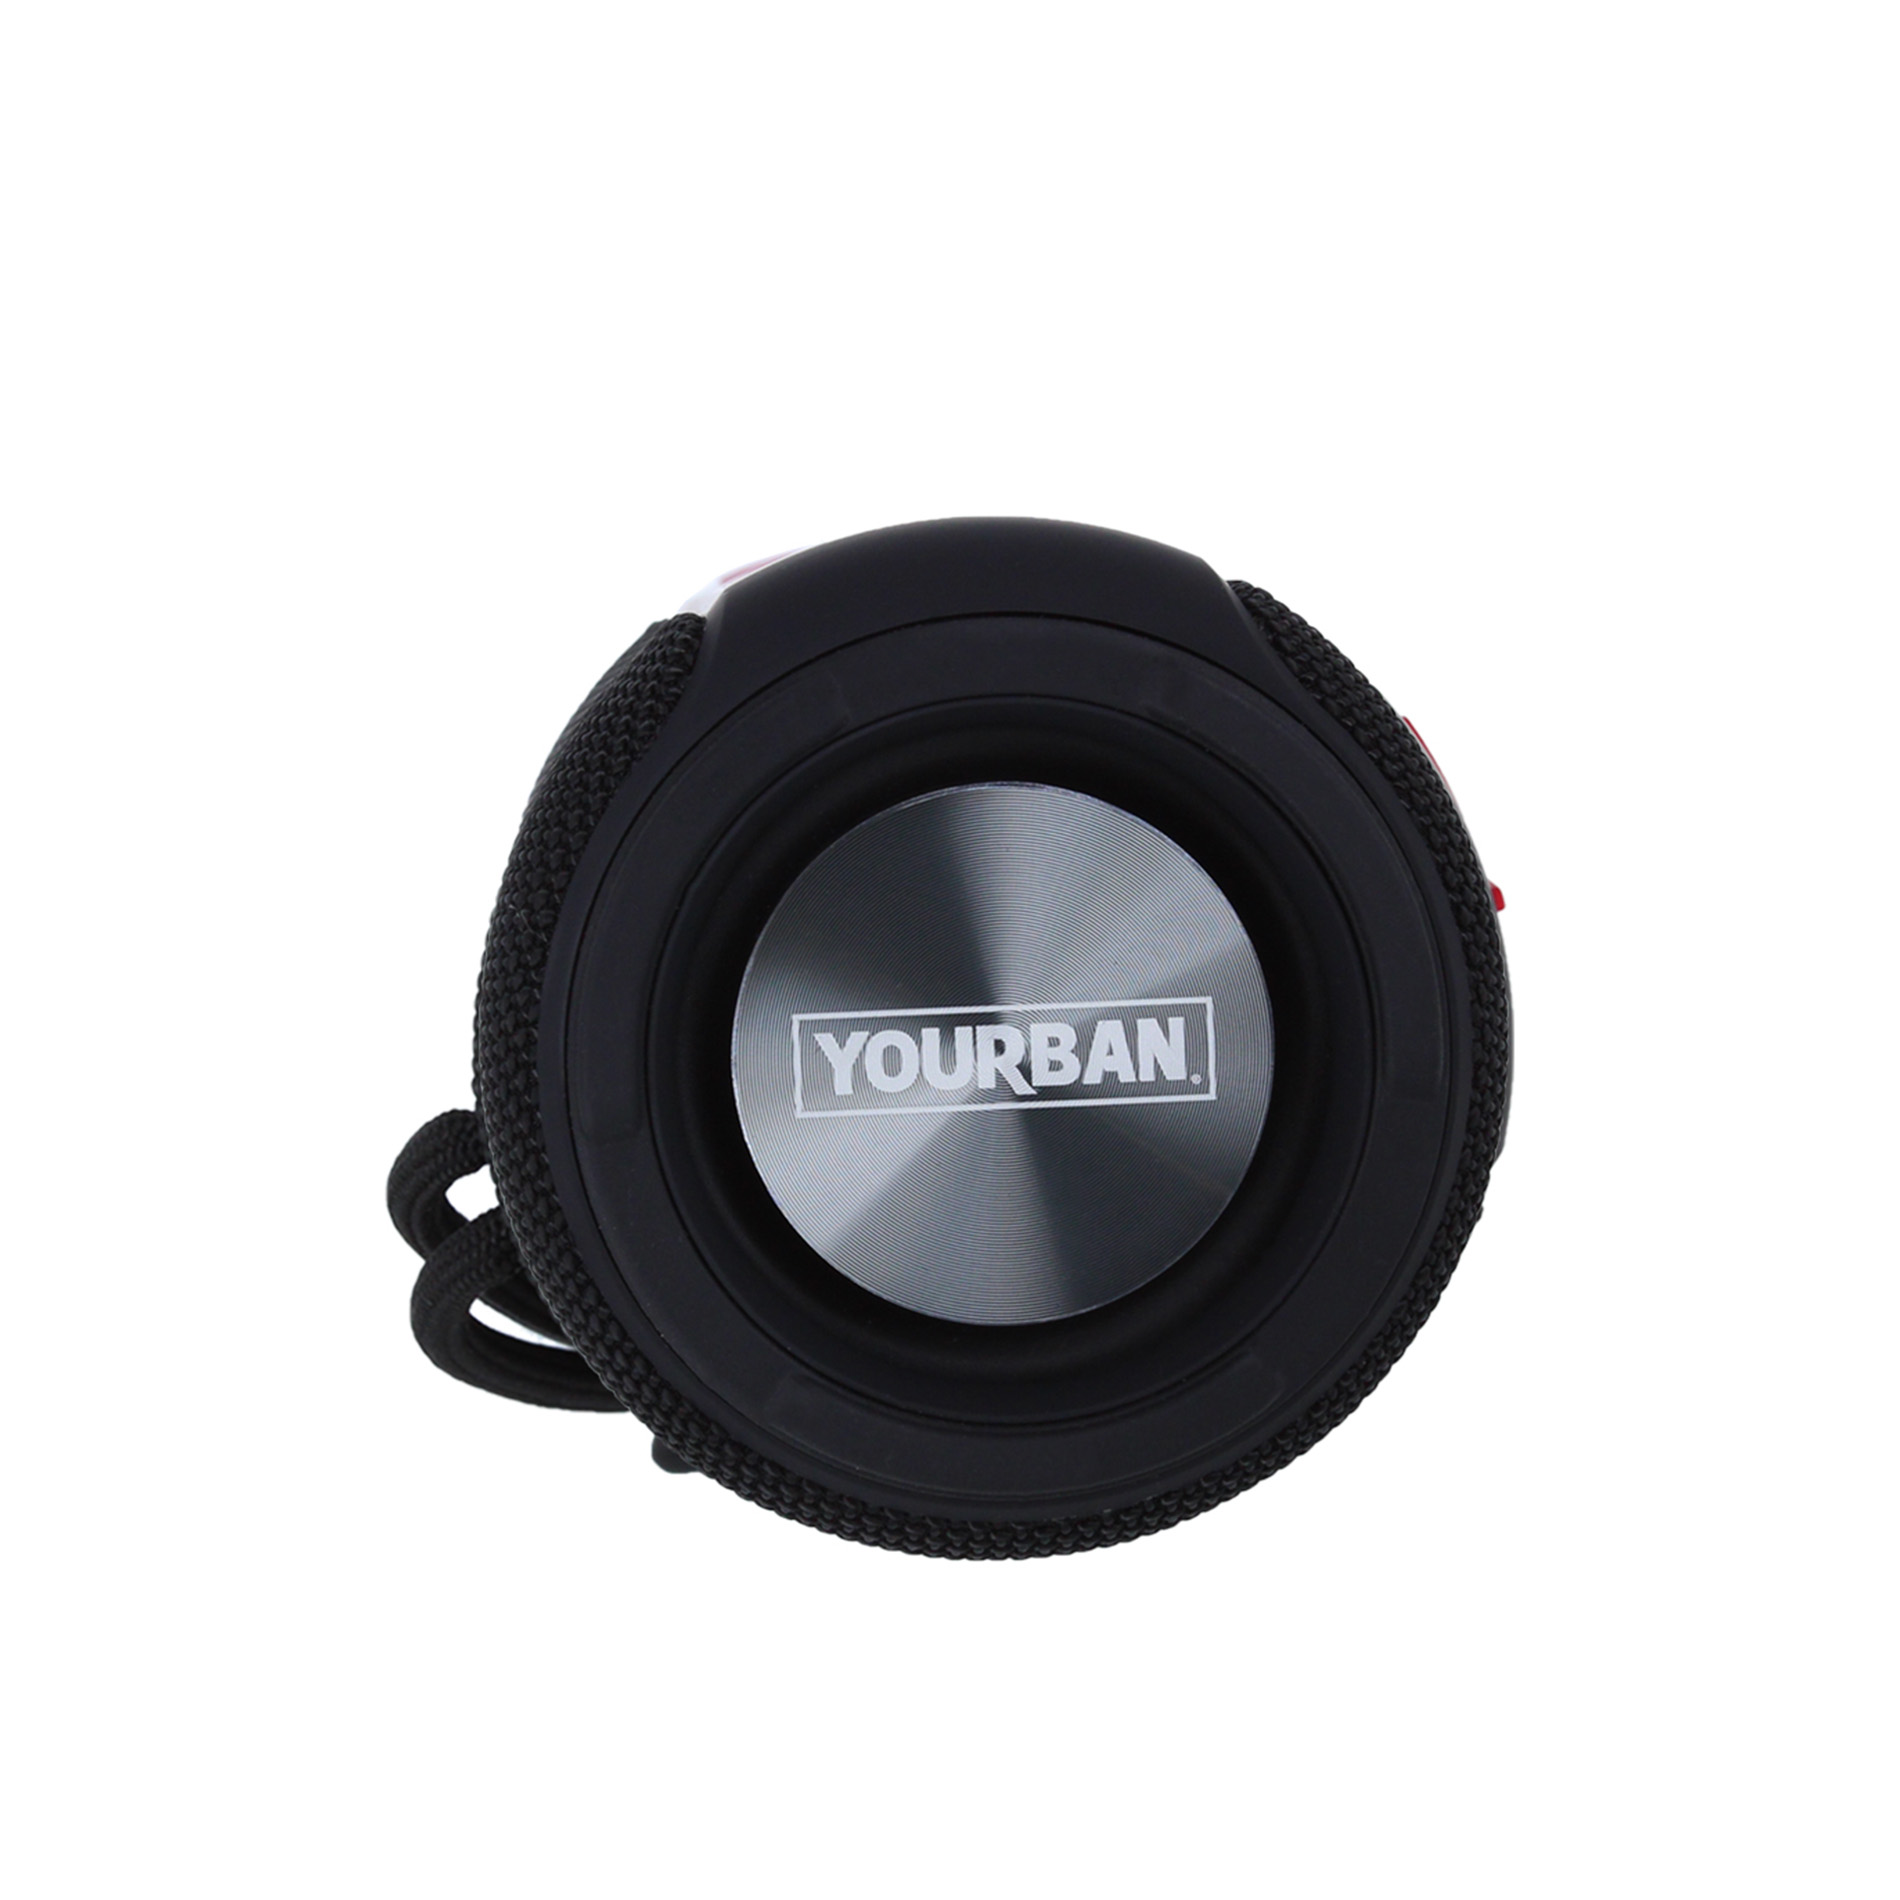 Yourban Getone 30 Black Mk2 - Sistema de sonorización portátil - Variation 6